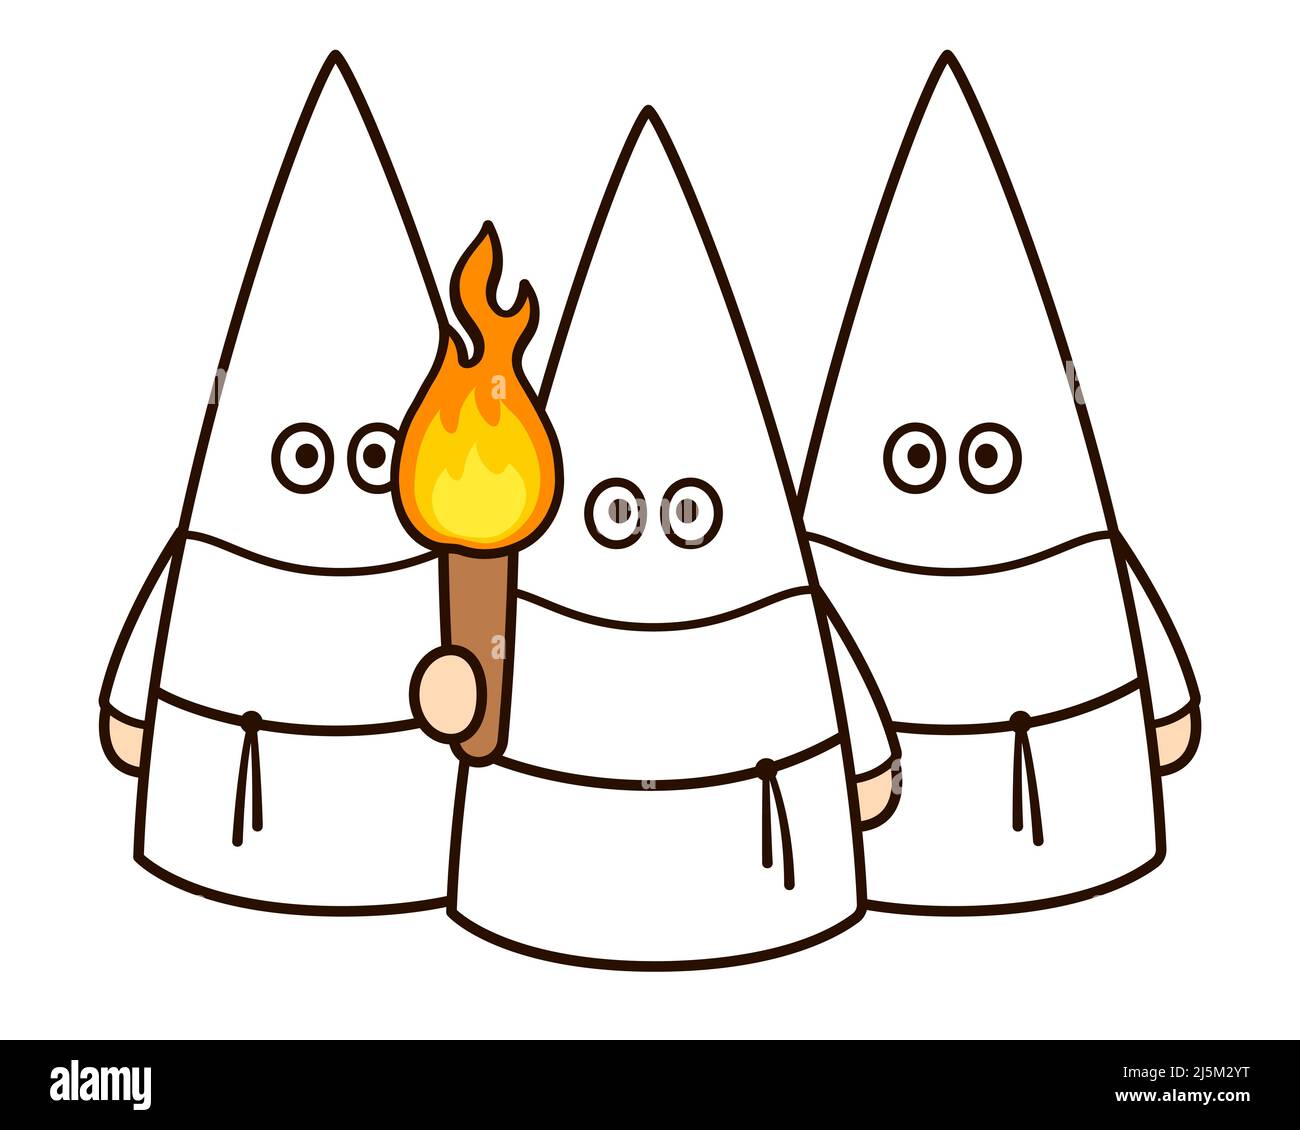 Ein Mob von Ku Klux Klan Mitgliedern in weißen Kapuzen mit Fackel. Amerikanische Geschichte Cartoon, weiße Vormachtstellung Extremisten. Vektorgrafik Clip Art Illustration. Stock Vektor